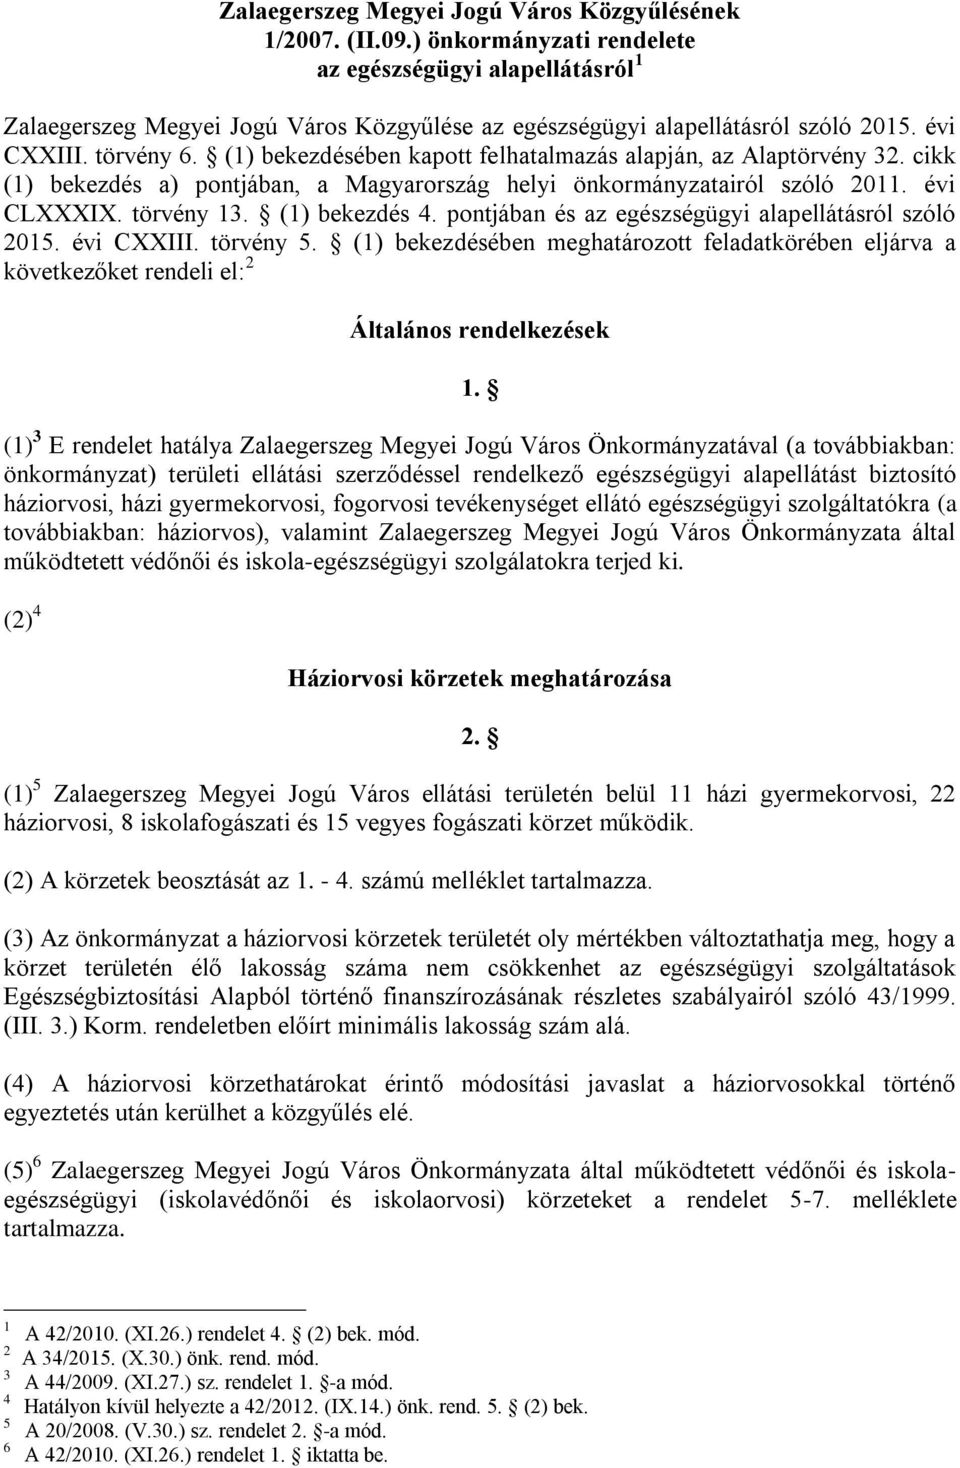 (1) bekezdésében kapott felhatalmazás alapján, az Alaptörvény 32. cikk (1) bekezdés a) pontjában, a Magyarország helyi önkormányzatairól szóló 2011. évi CLXXXIX. törvény 13. (1) bekezdés 4.